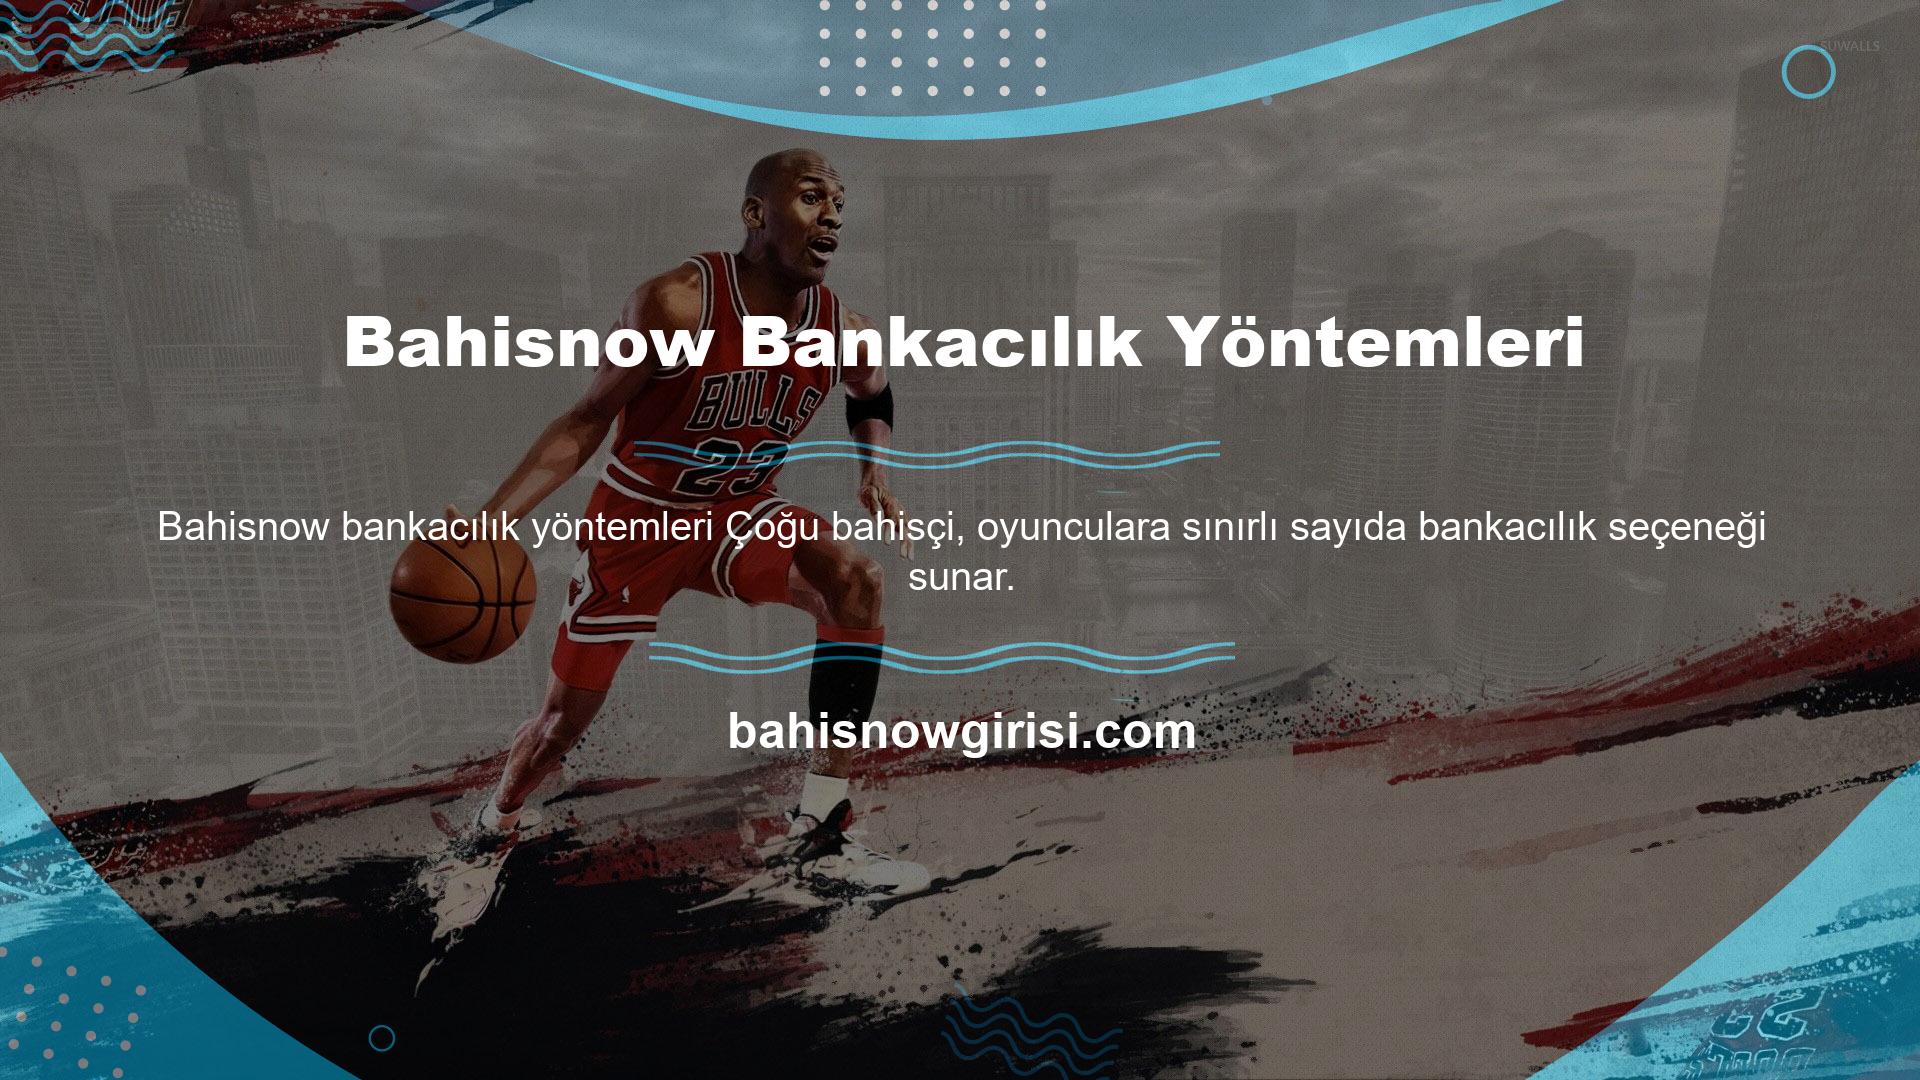 Bahisnow, oyuncu bankacılığı hizmetlerini ondan fazla şekilde sunar